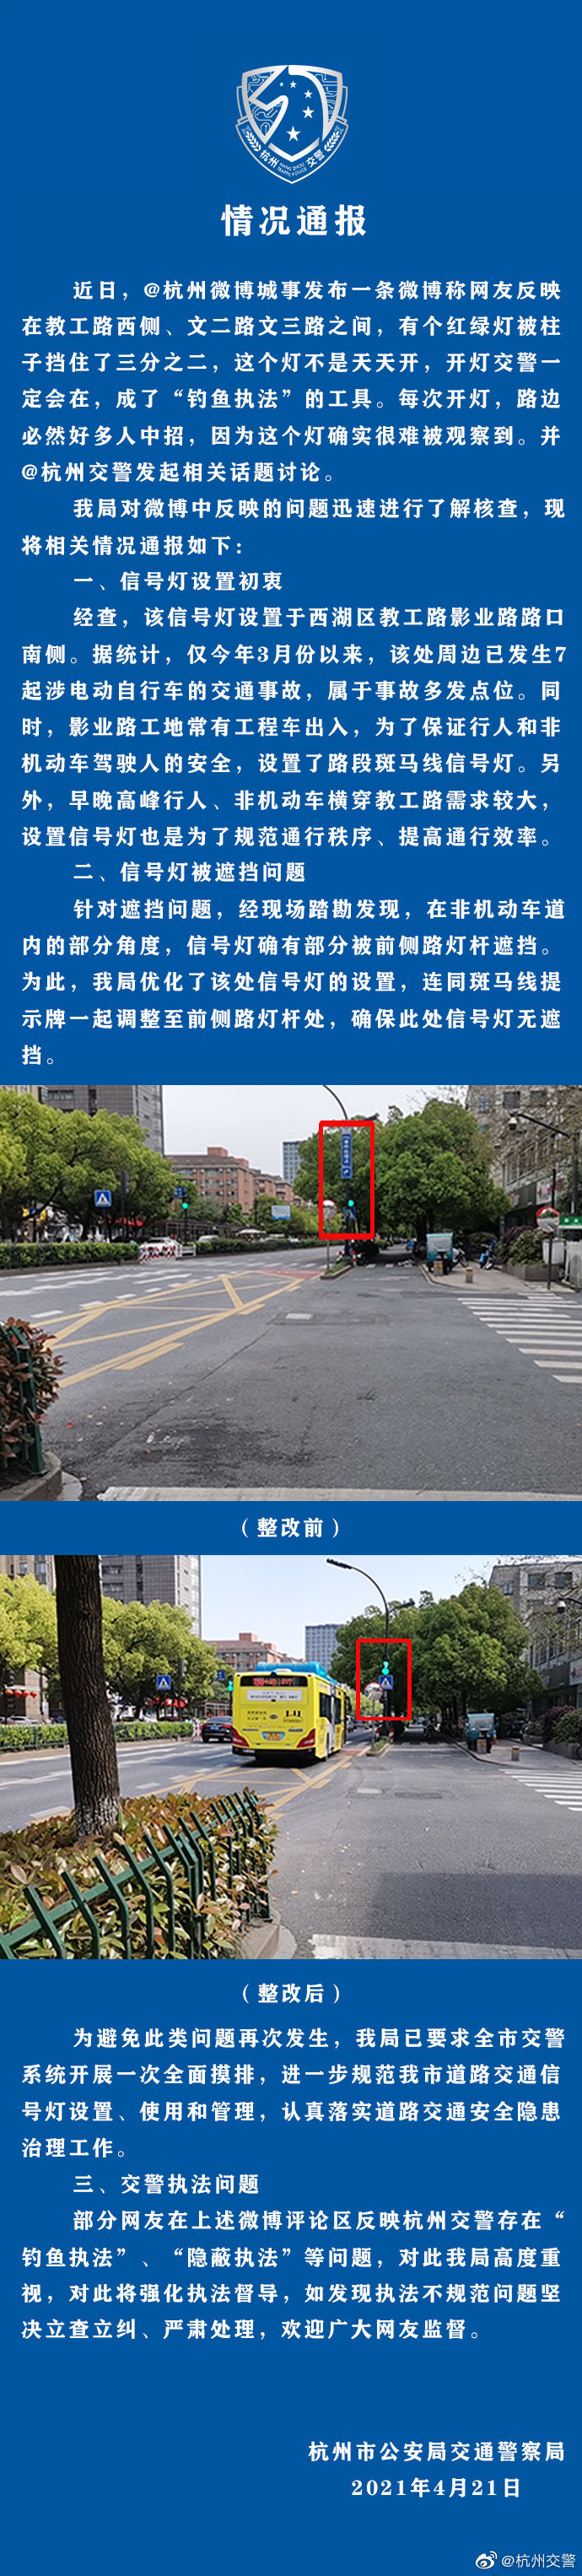 杭州交警通报“群众反映一被挡红绿灯成钓鱼执法工具”：已优化设置，将强化执法督导